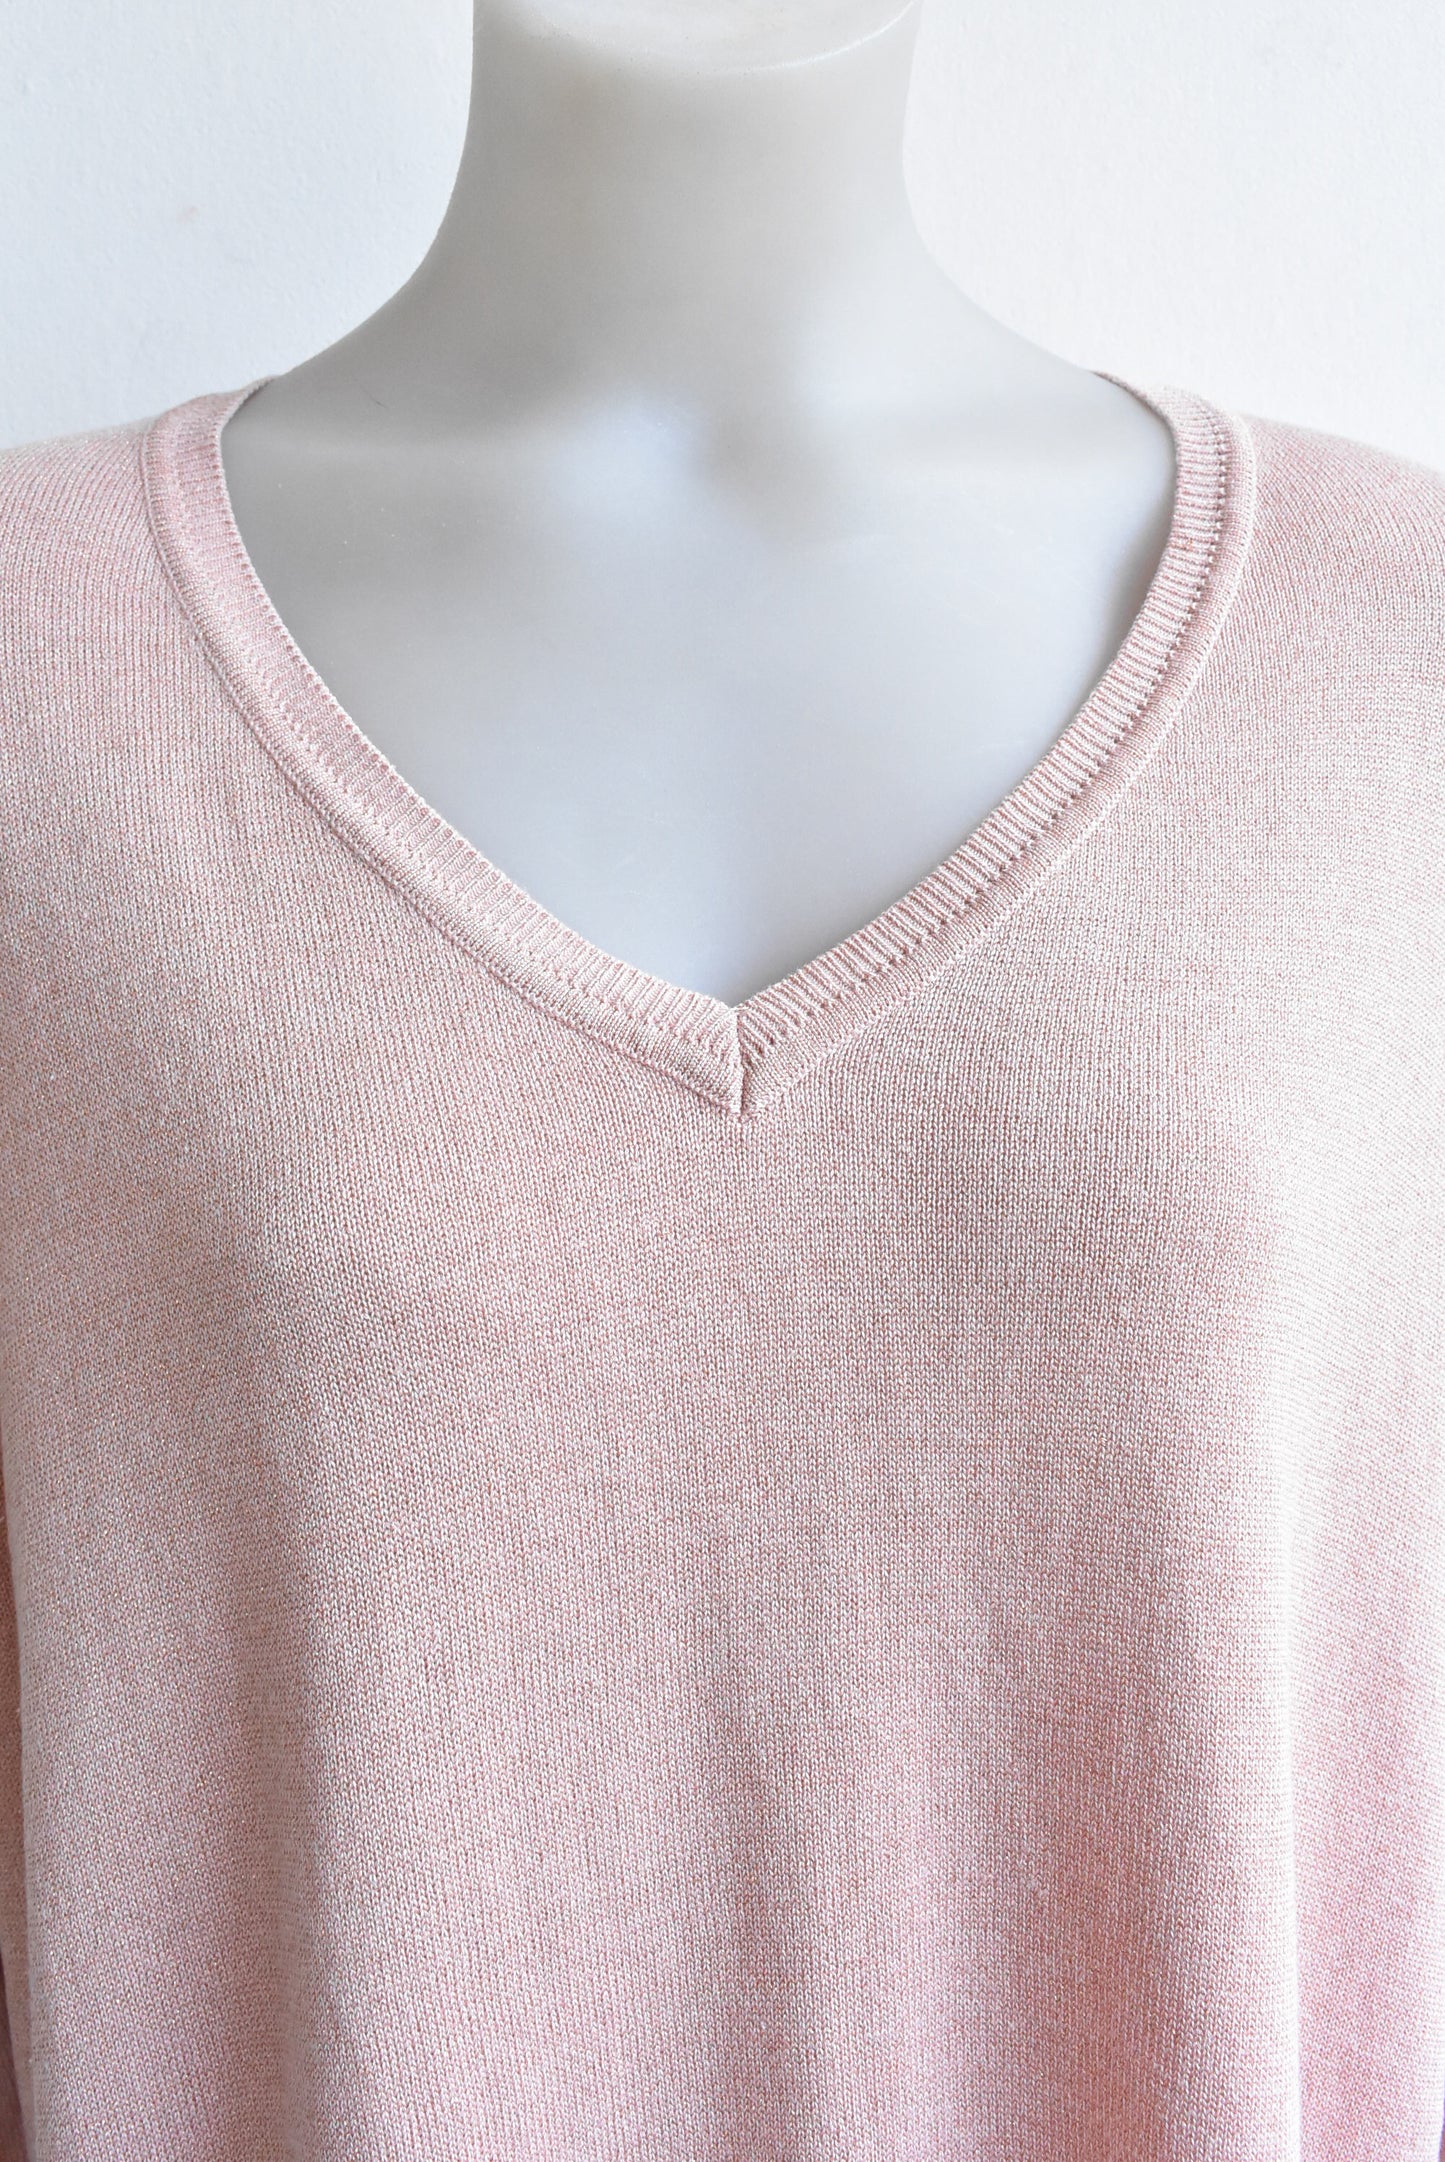 Calvin Klein pink silk knit top, size XL